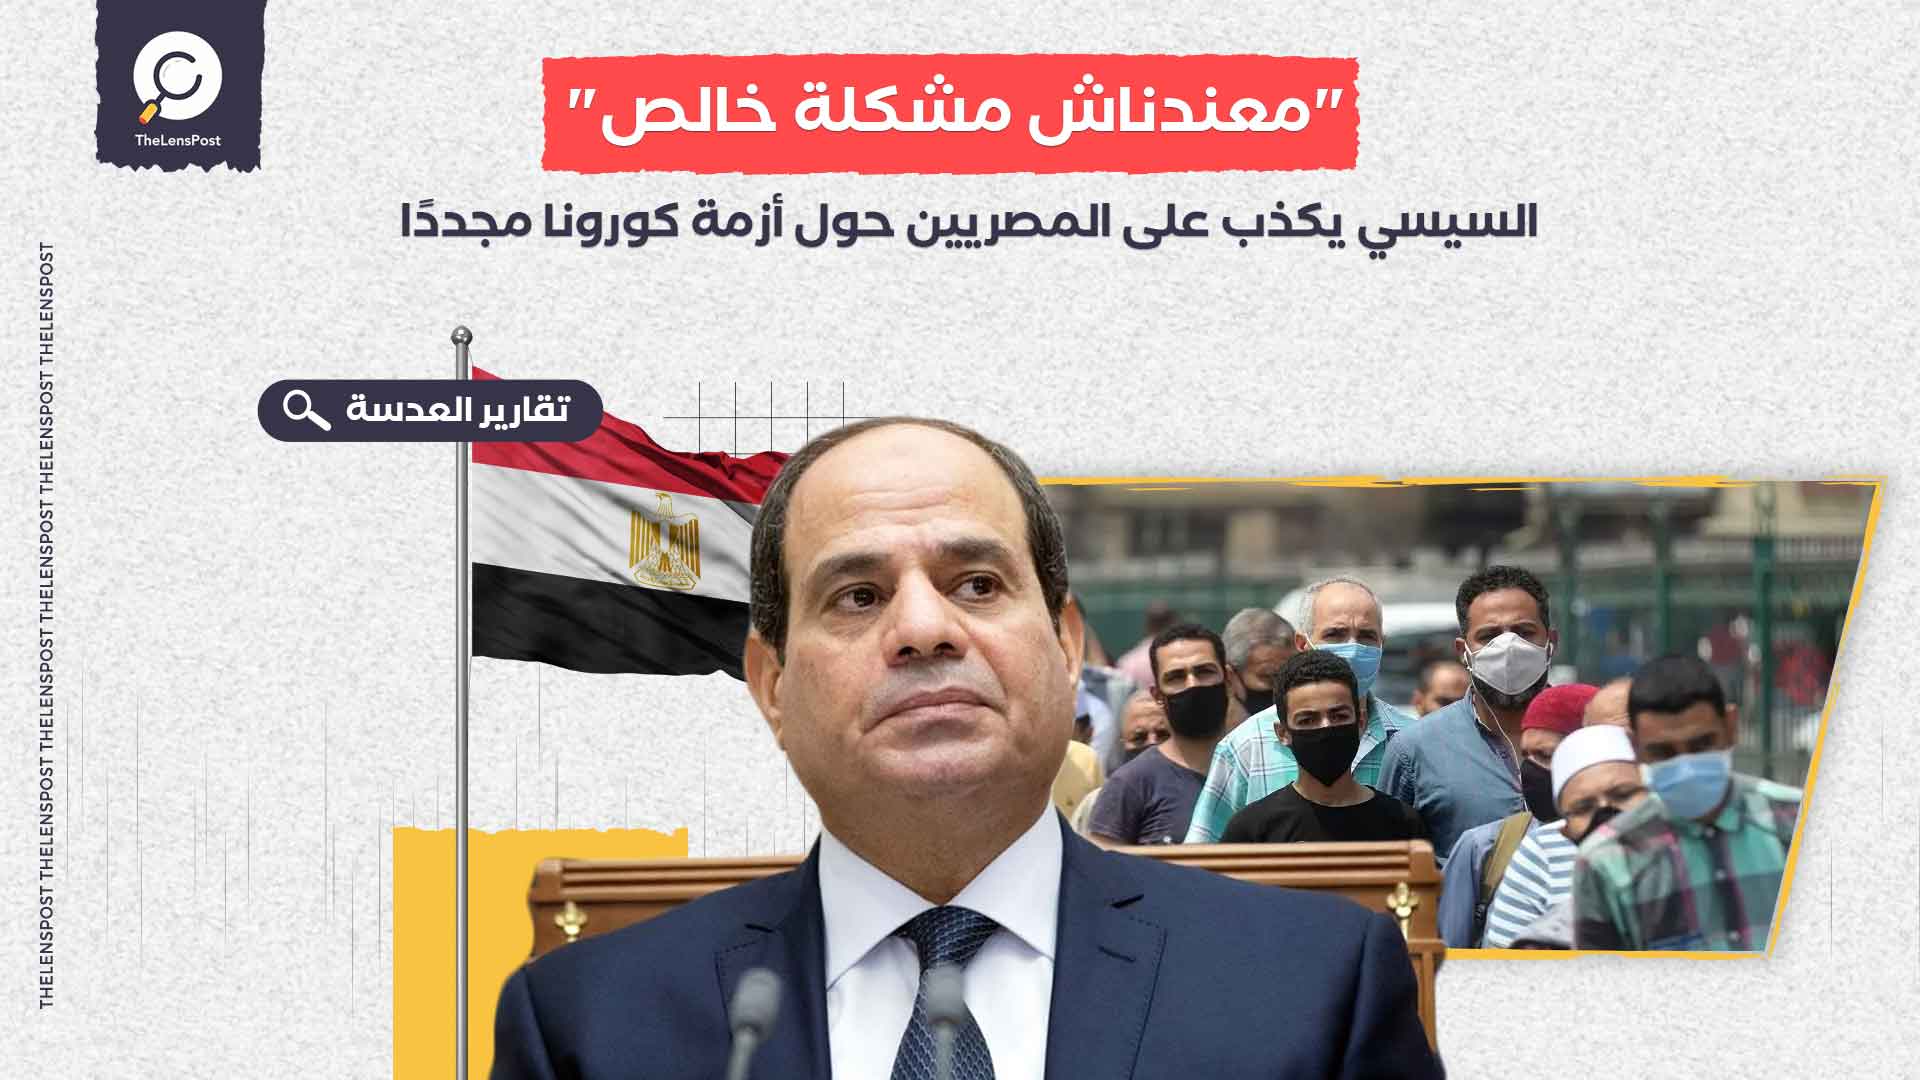 "معندناش مشكلة خالص".. السيسي يكذب على المصريين حول أزمة كورونا مجددًا